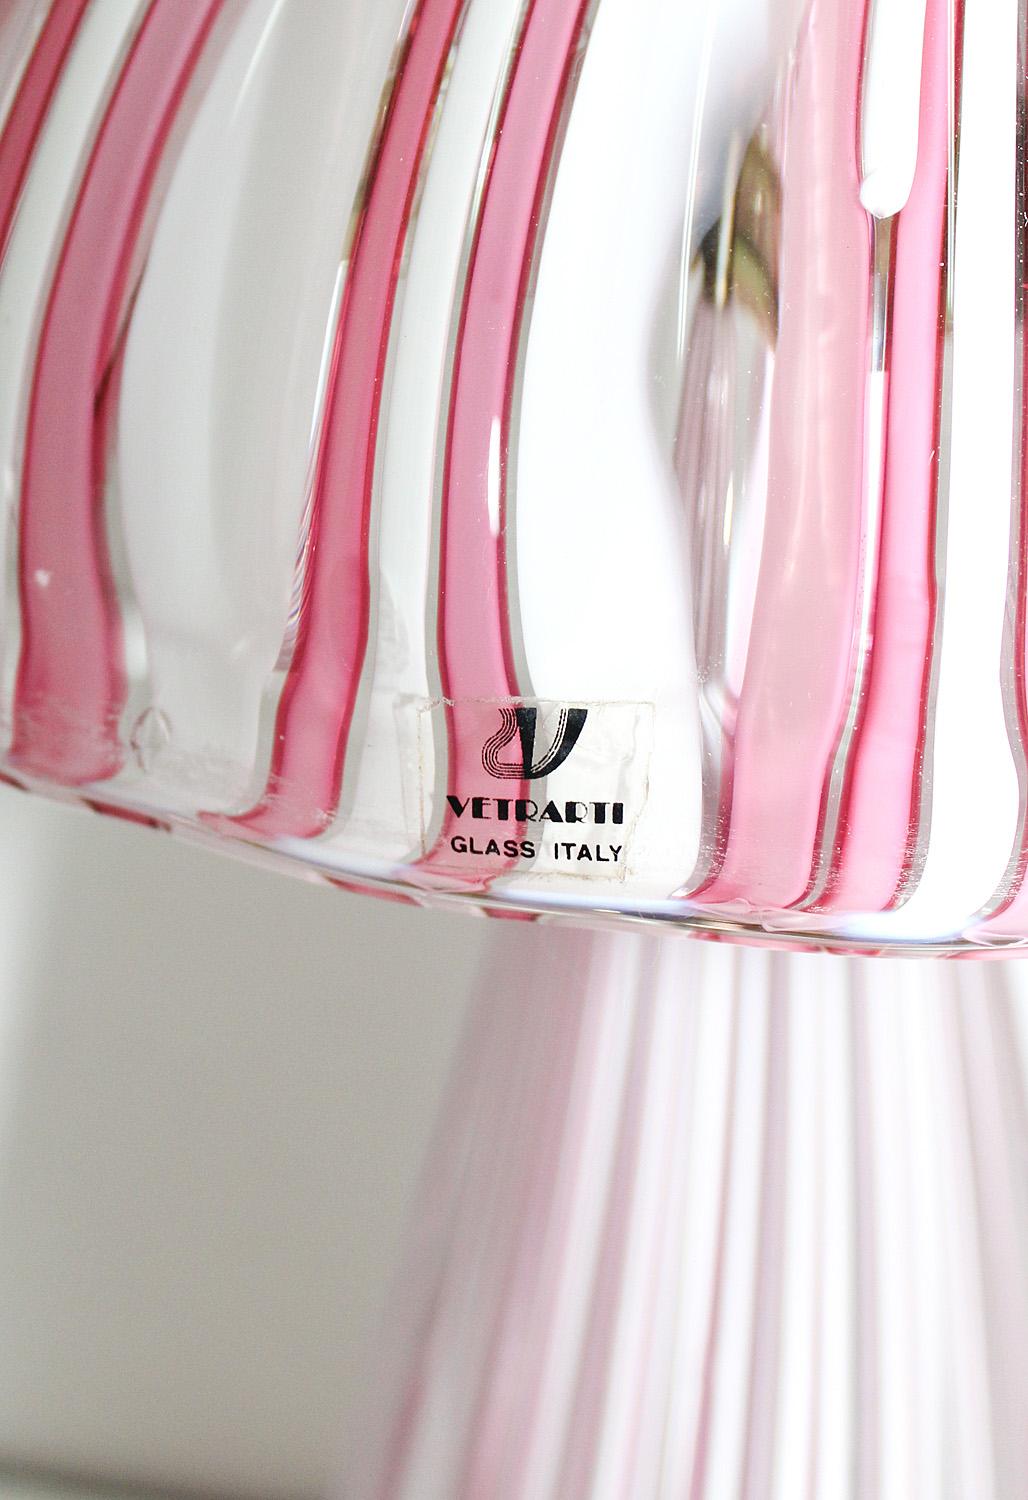 Grande paire de lampes de table en verre de Murano Vetrarti en forme de champignon rayé rose et blanc.
Idéal pour les tables de nuit ou les tables d'appoint de la chambre à coucher.
Fonctionne avec un interrupteur à 2 voies pour une lumière